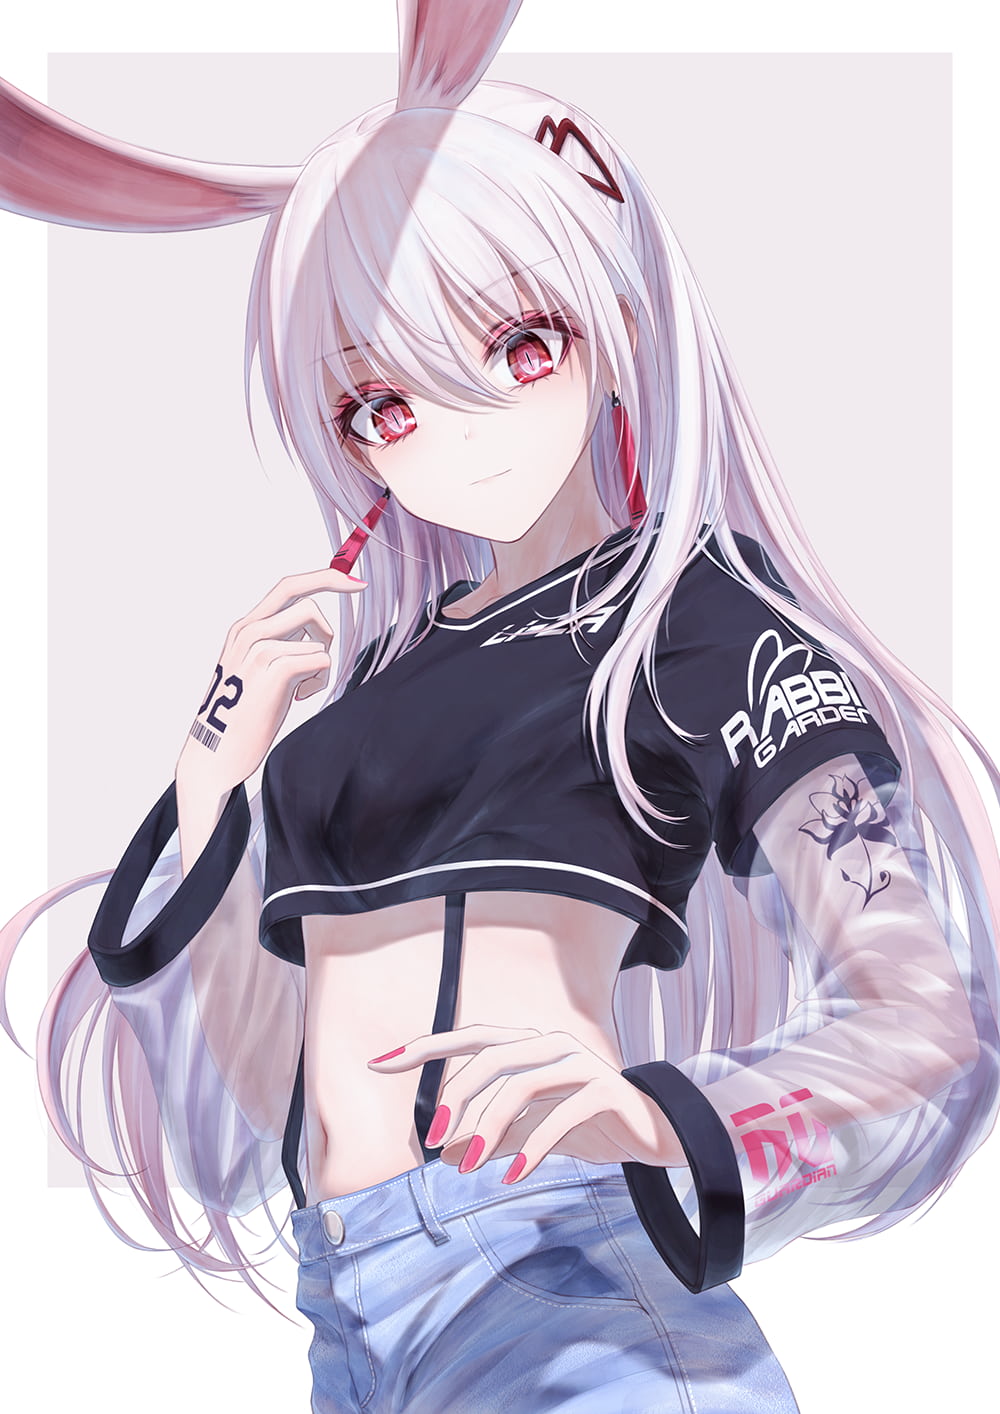 Anime 1000x1414 Bae.C anime anime girls original characters bunny girl